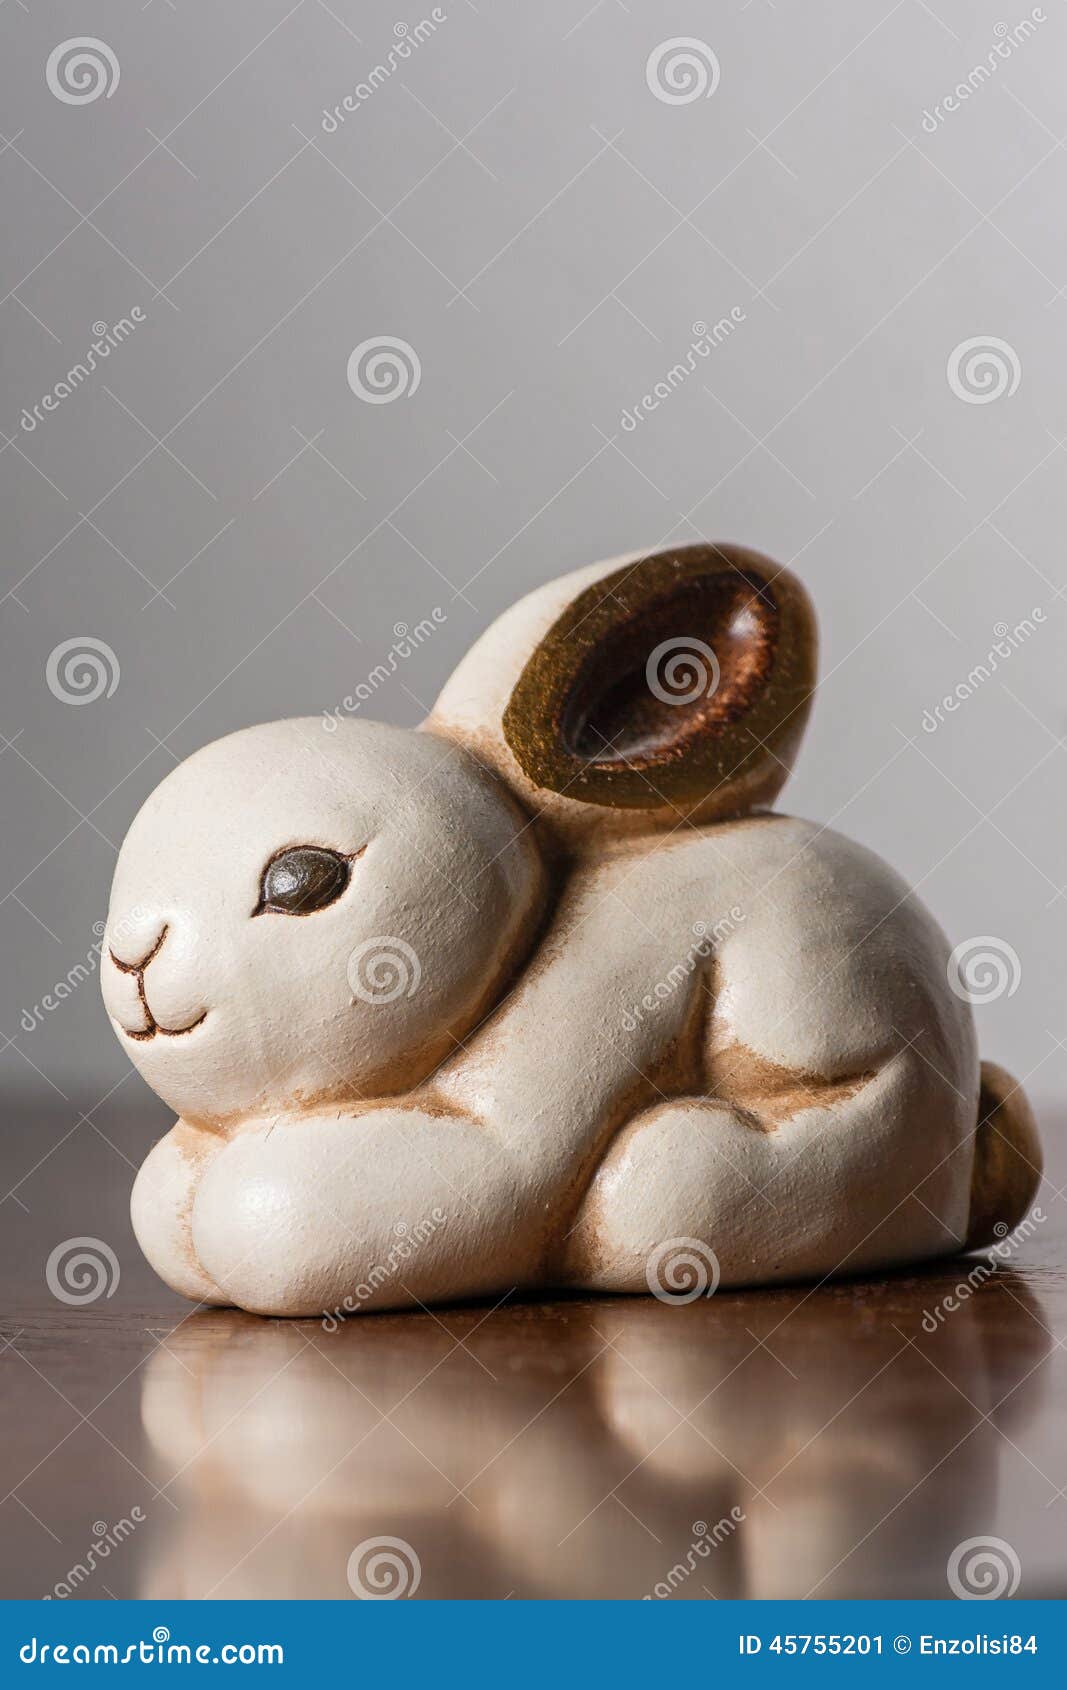 white ceramic bunny